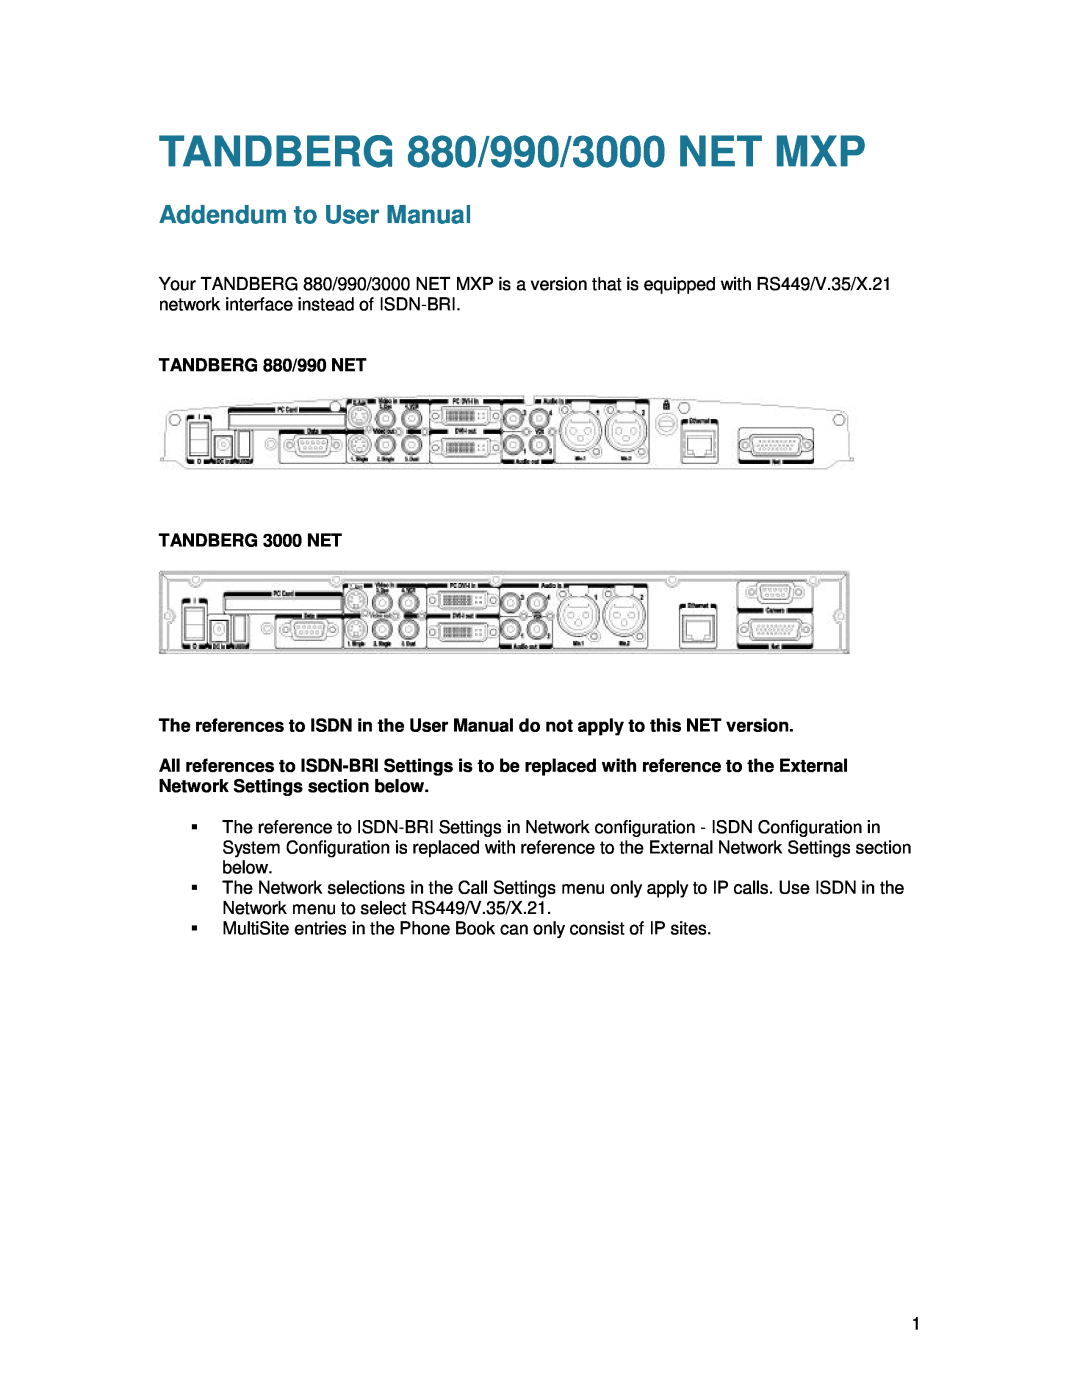 TANDBERG 770 user manual 990 / 880, UserManual 